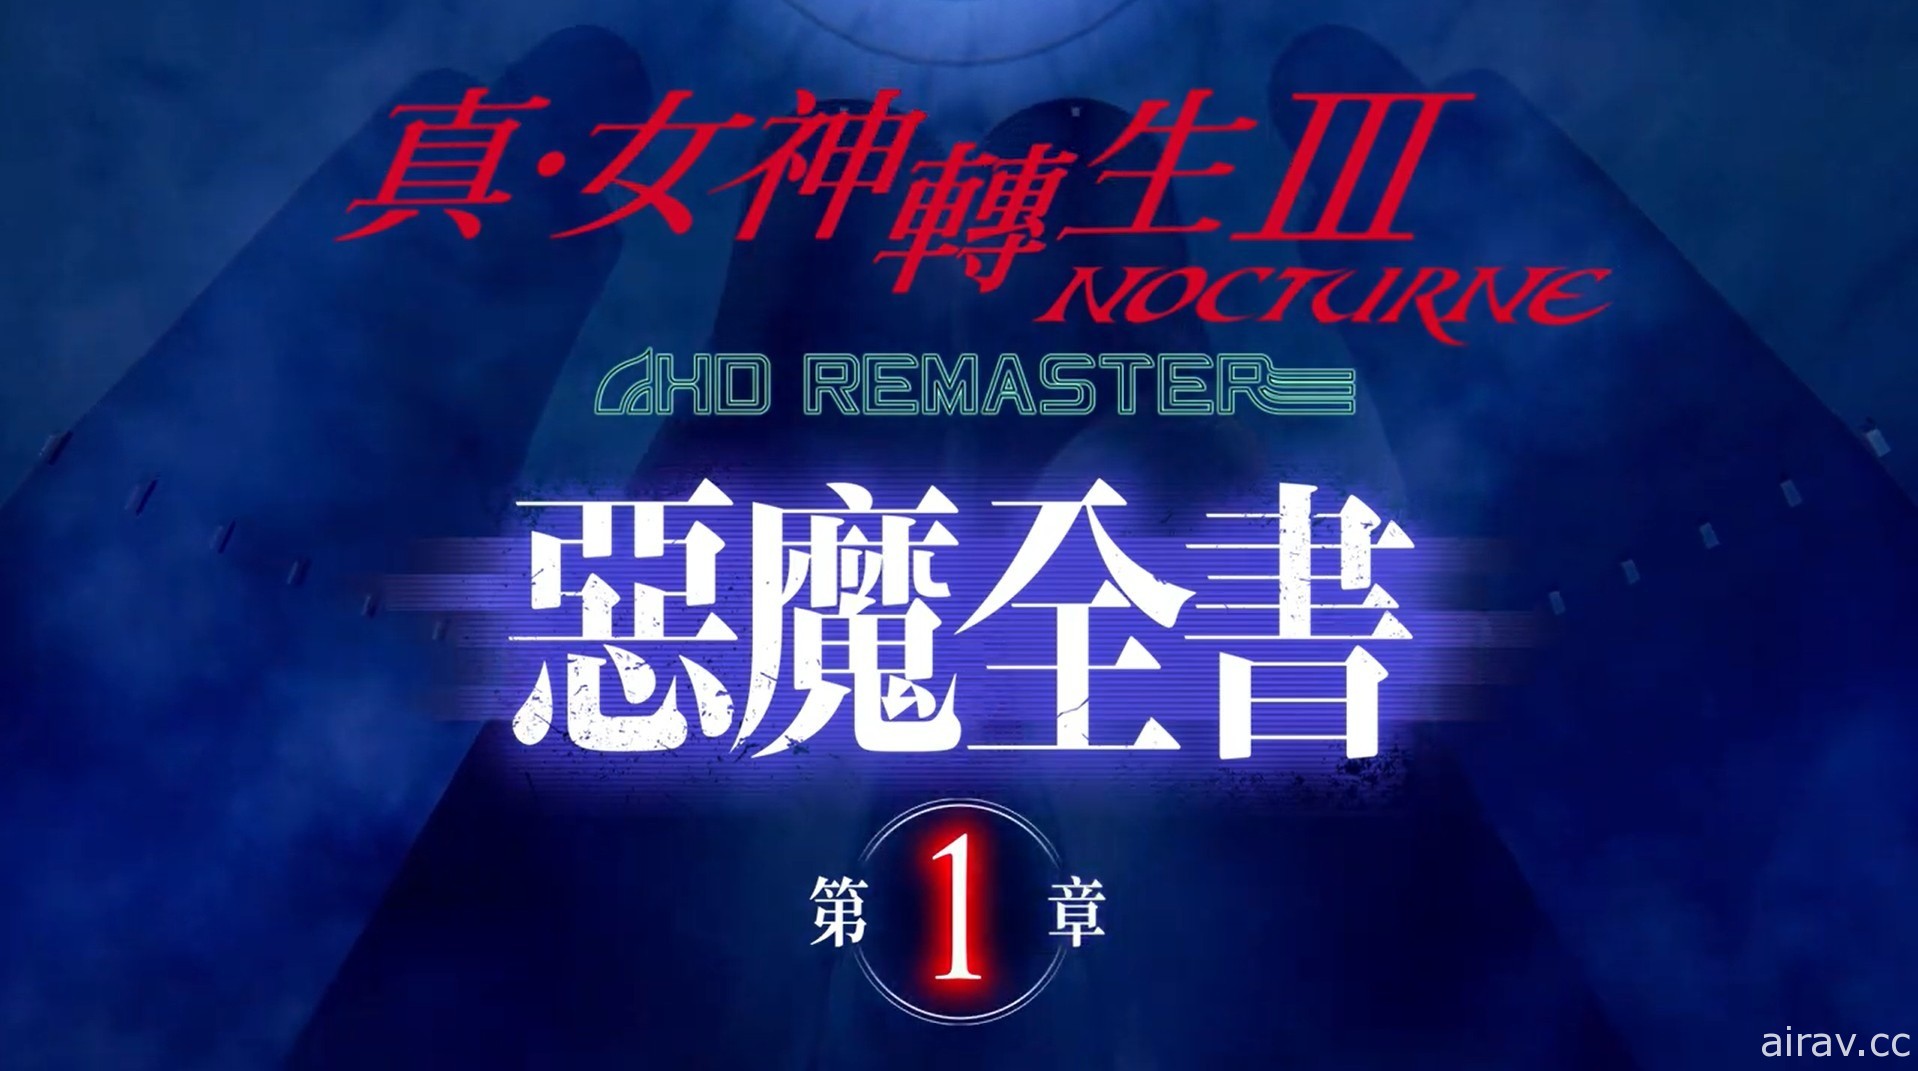 《真‧女神轉生 III Nocturne HD Remaster》「惡魔全書 PV」將連續 3 天依序公開